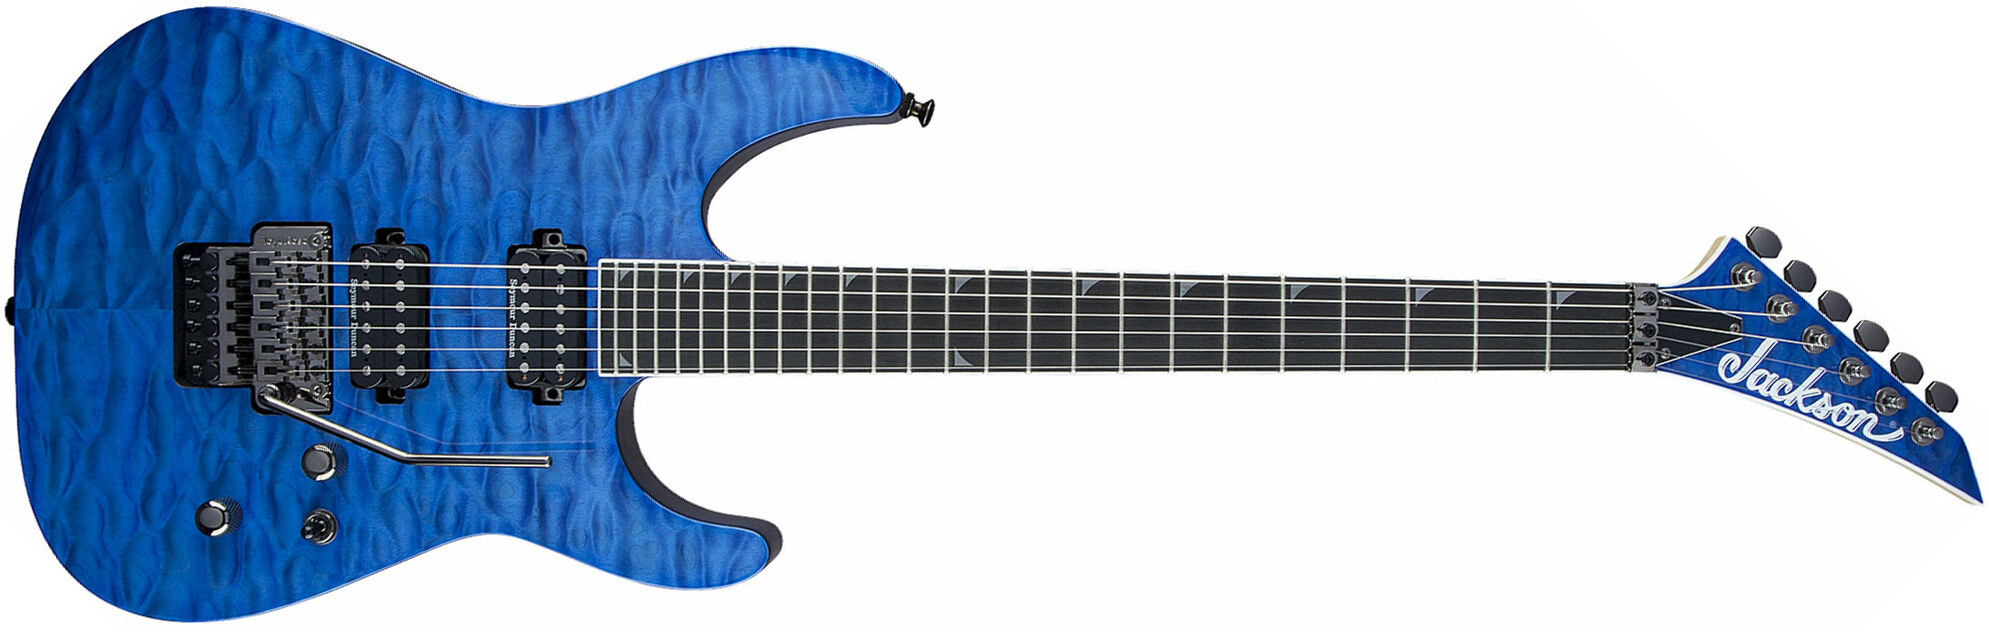 Jackson Soloist Pro Sl2q Mah Hh Seymour Duncan Fr Eb - Transparent Blue - Guitarra eléctrica con forma de str. - Main picture